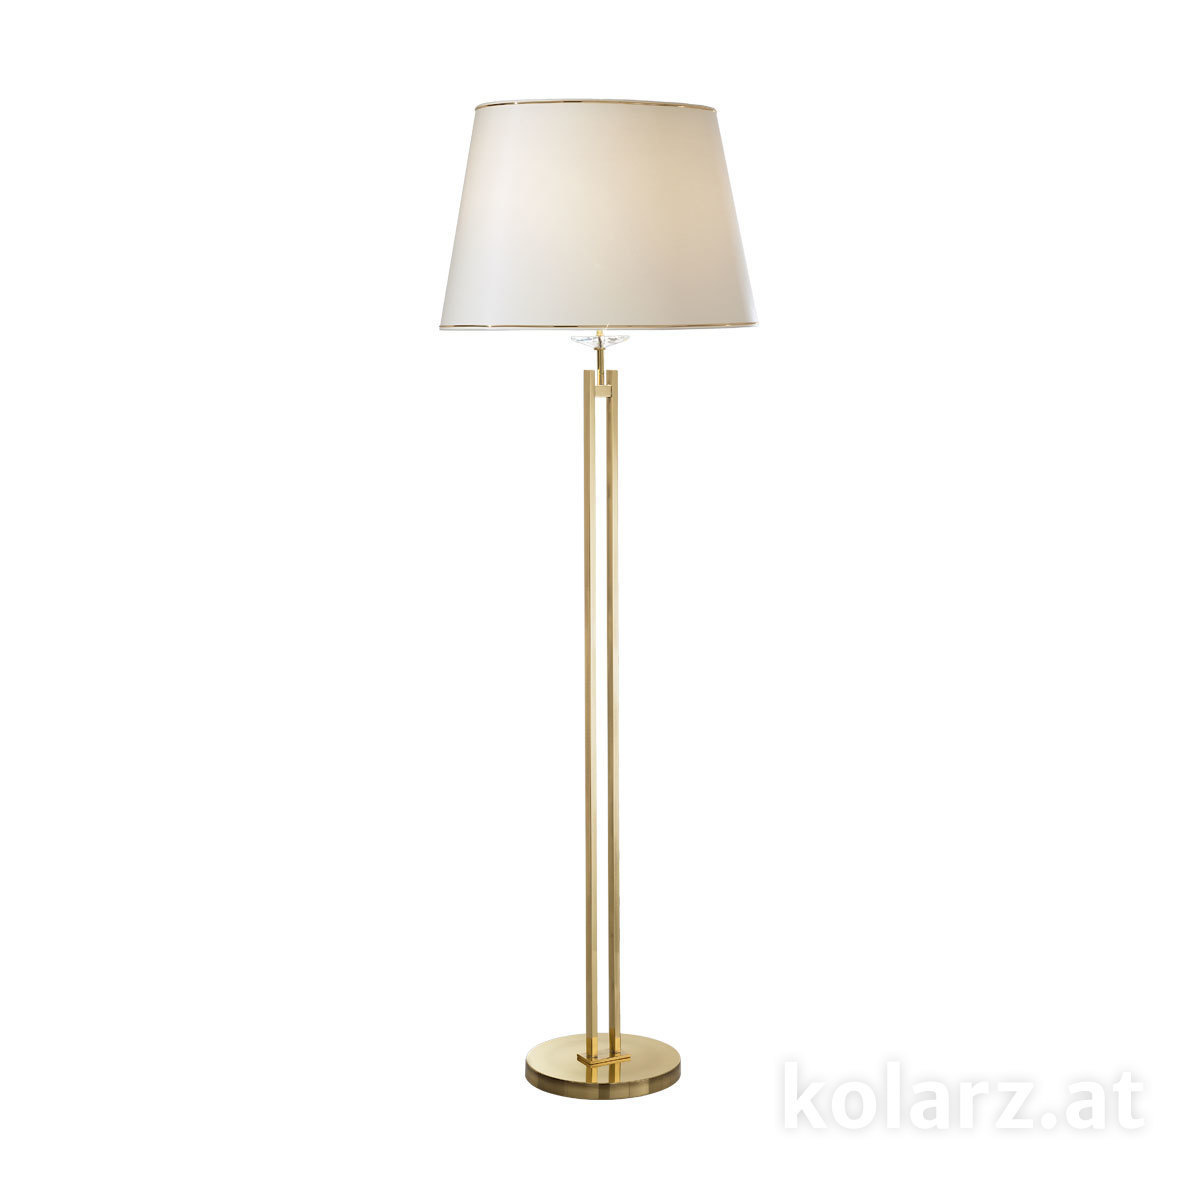 Stehleuchten & Stehlampen von KOLARZ Leuchten Bodenleuchte,  floor lamp - Imperial 330.42.8C